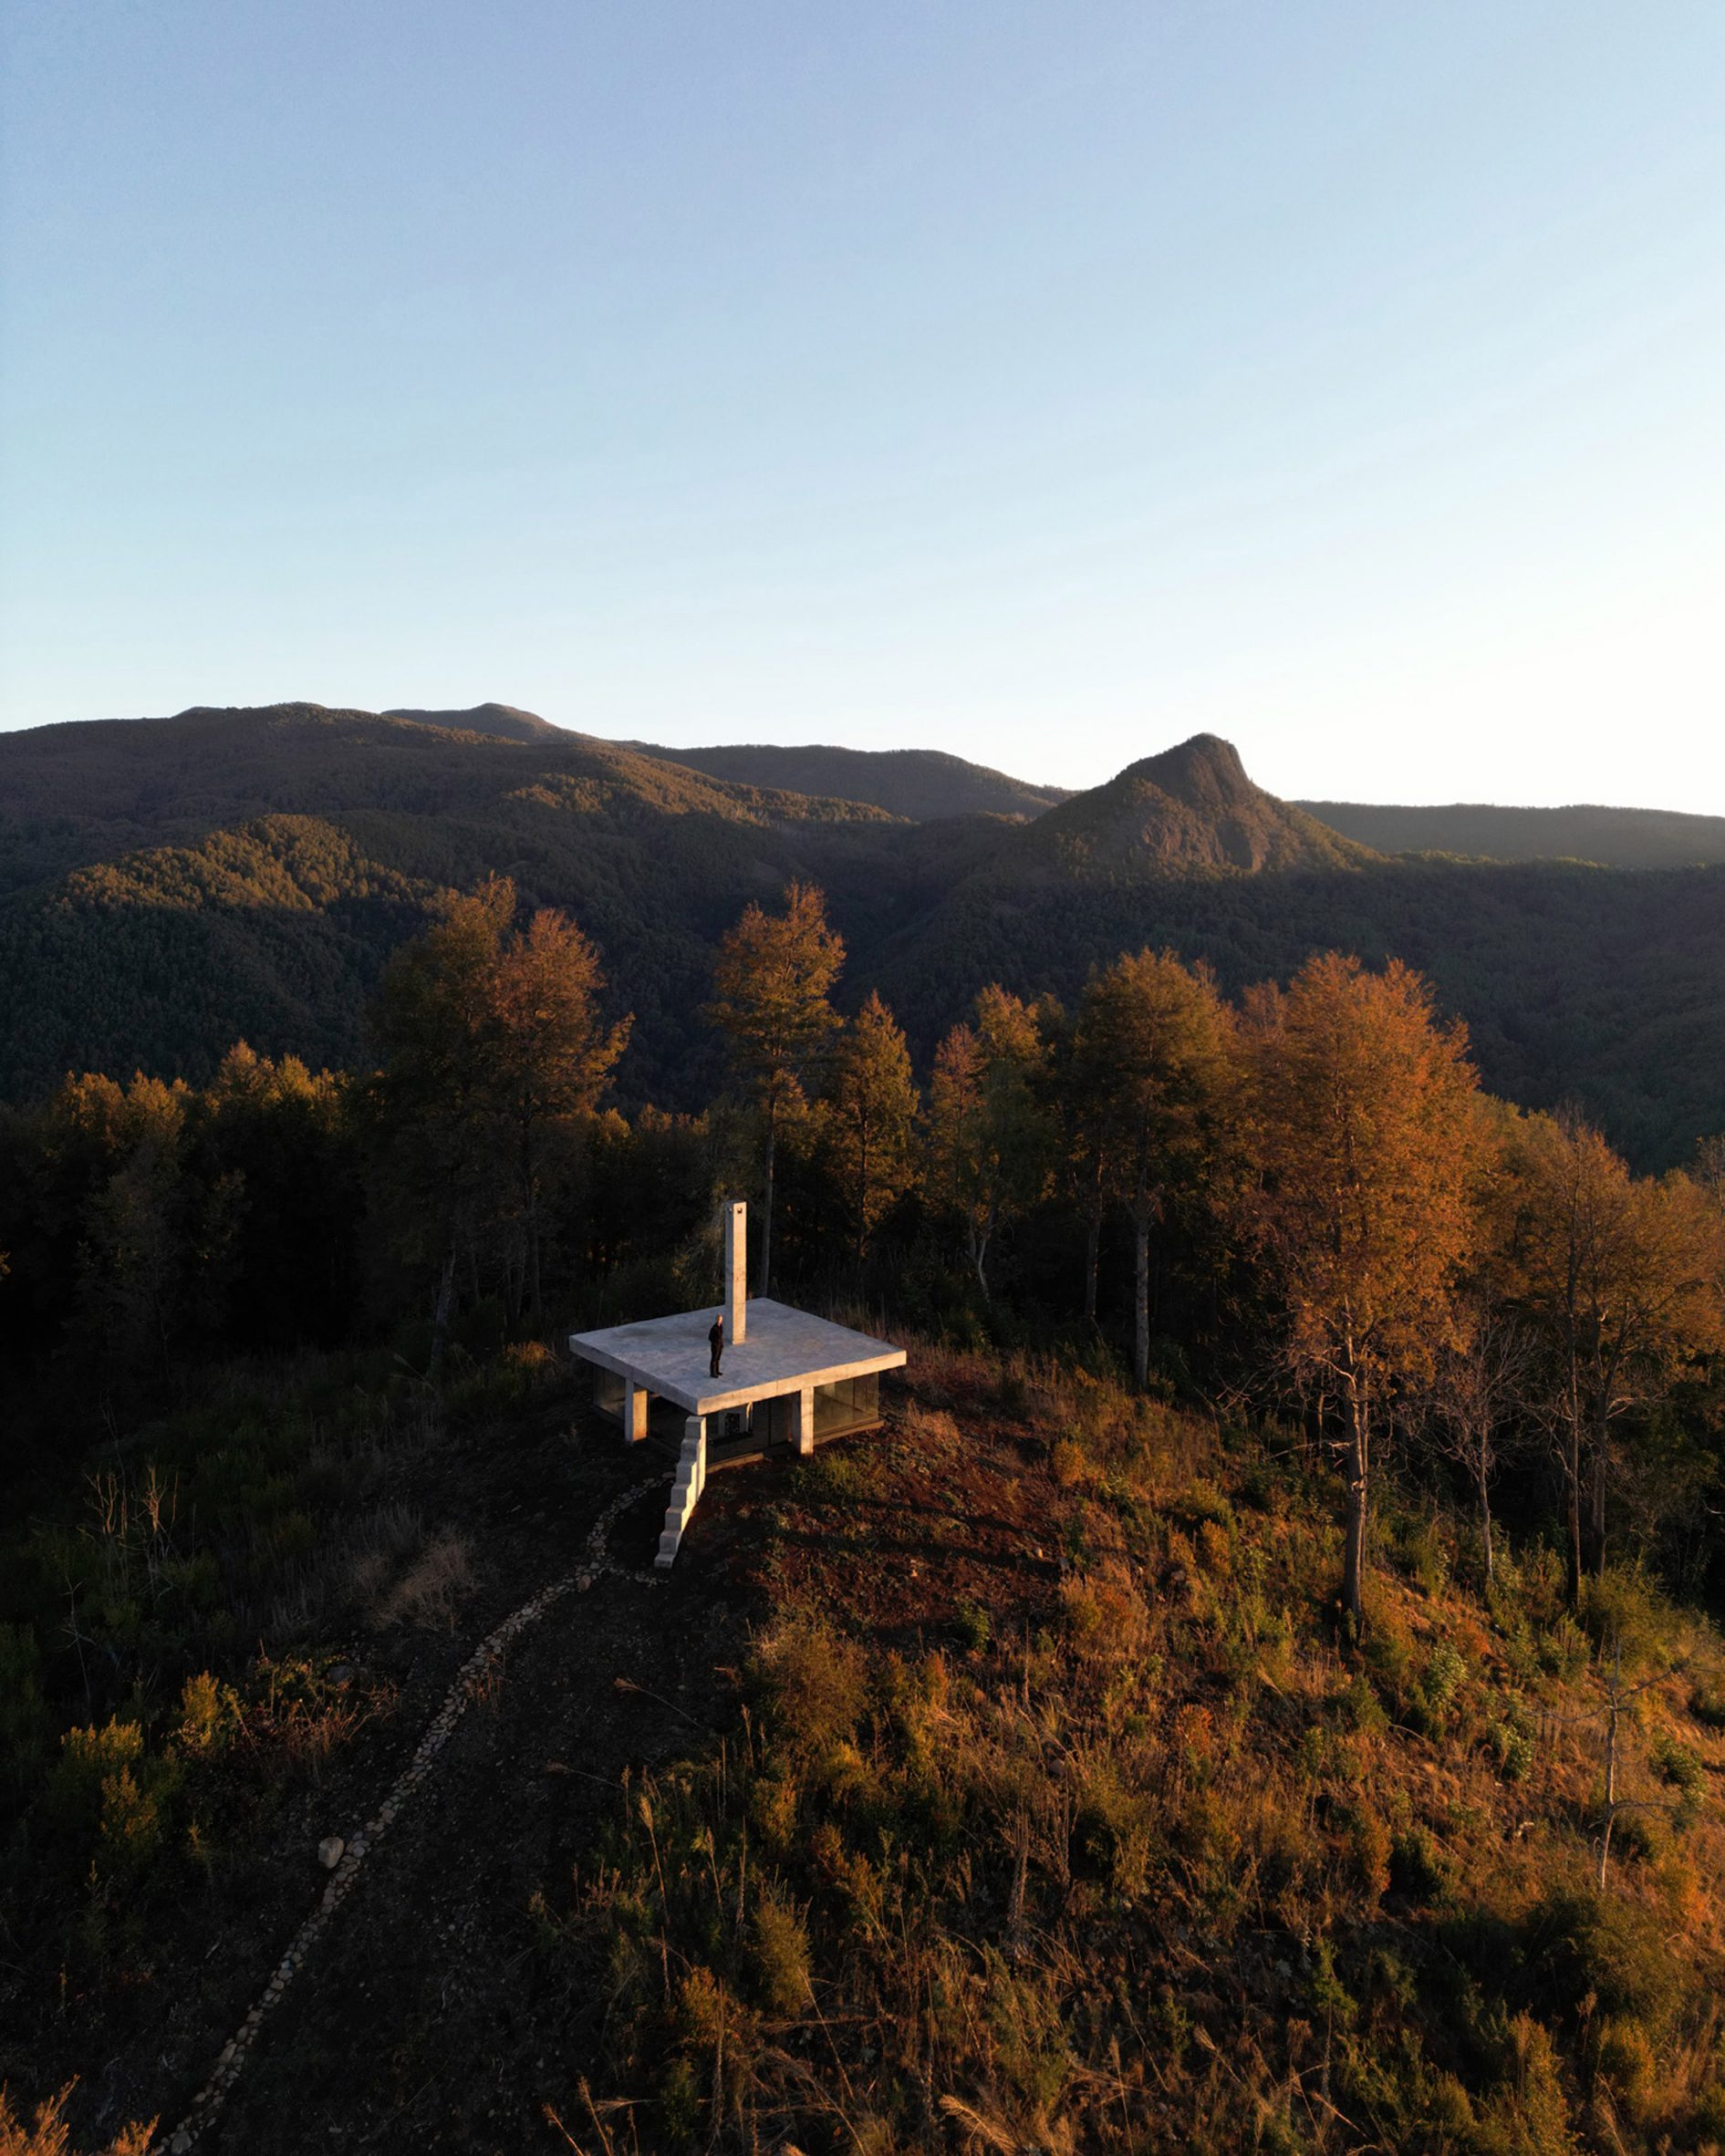 Rosa hilltop shelter is a is a Pezo von Ellrichshausen pavilion in Chilean landscape